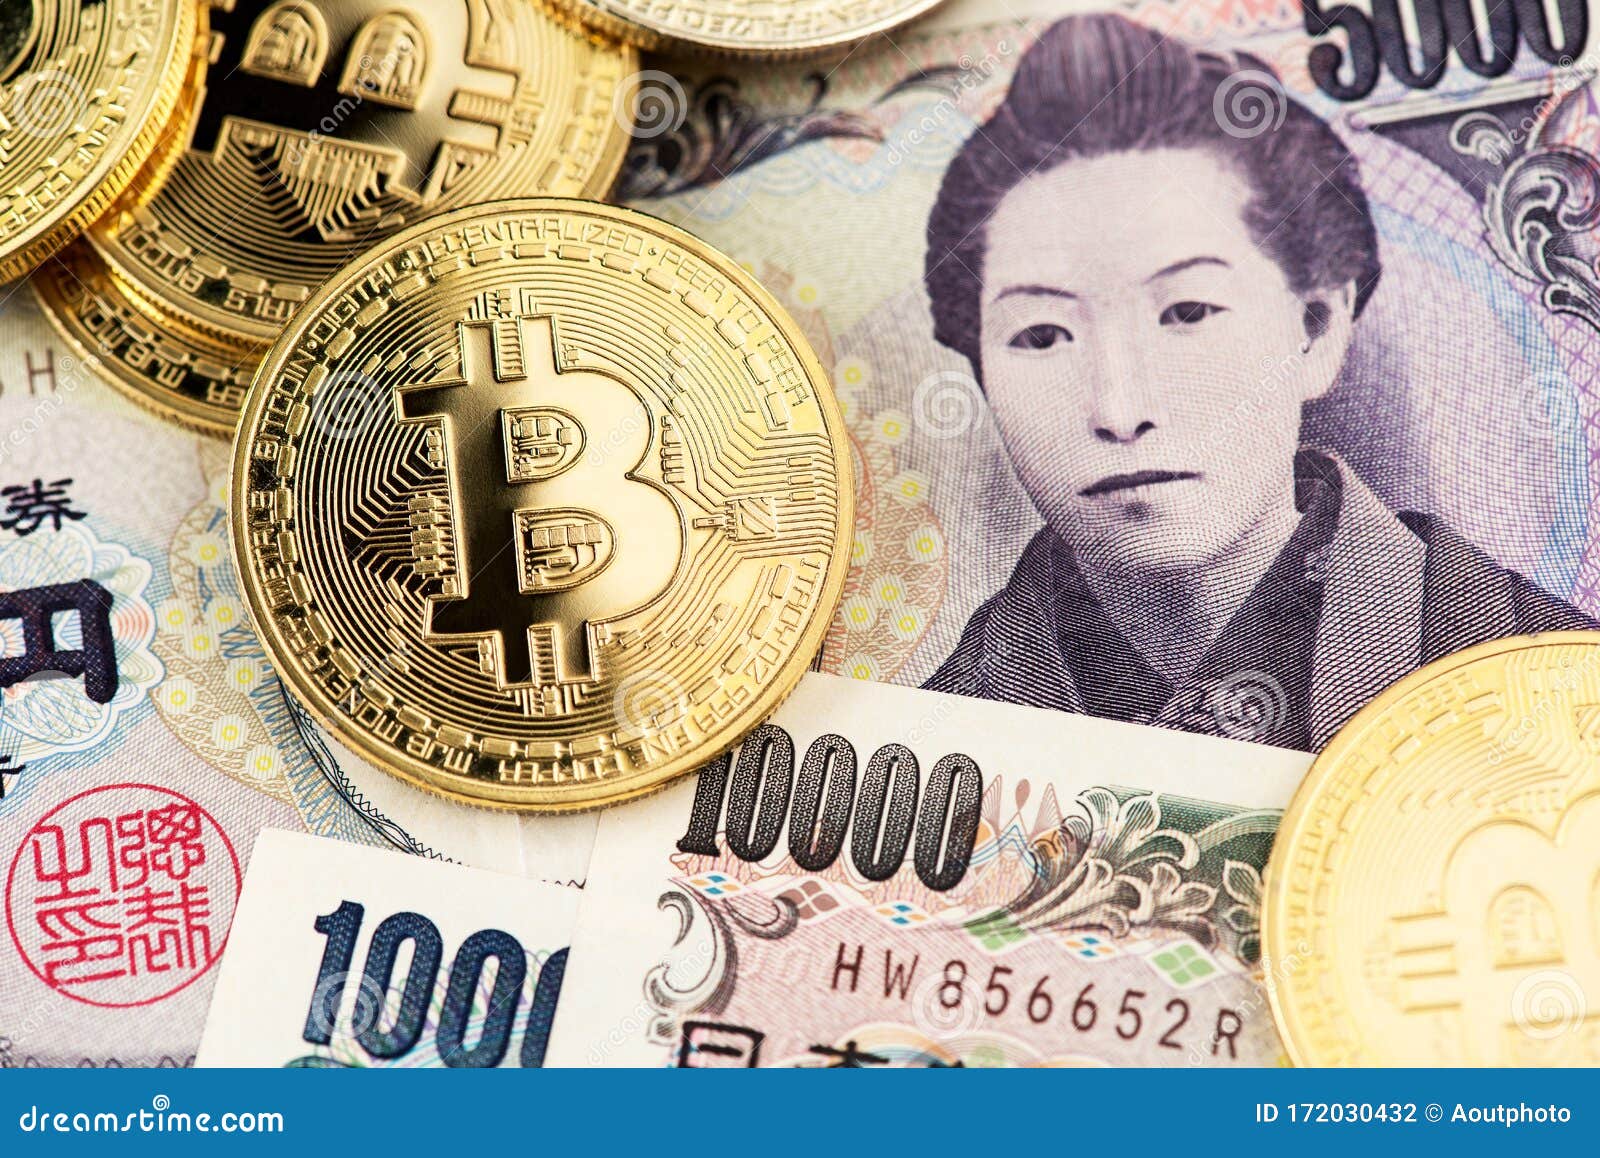 yen crypto coin